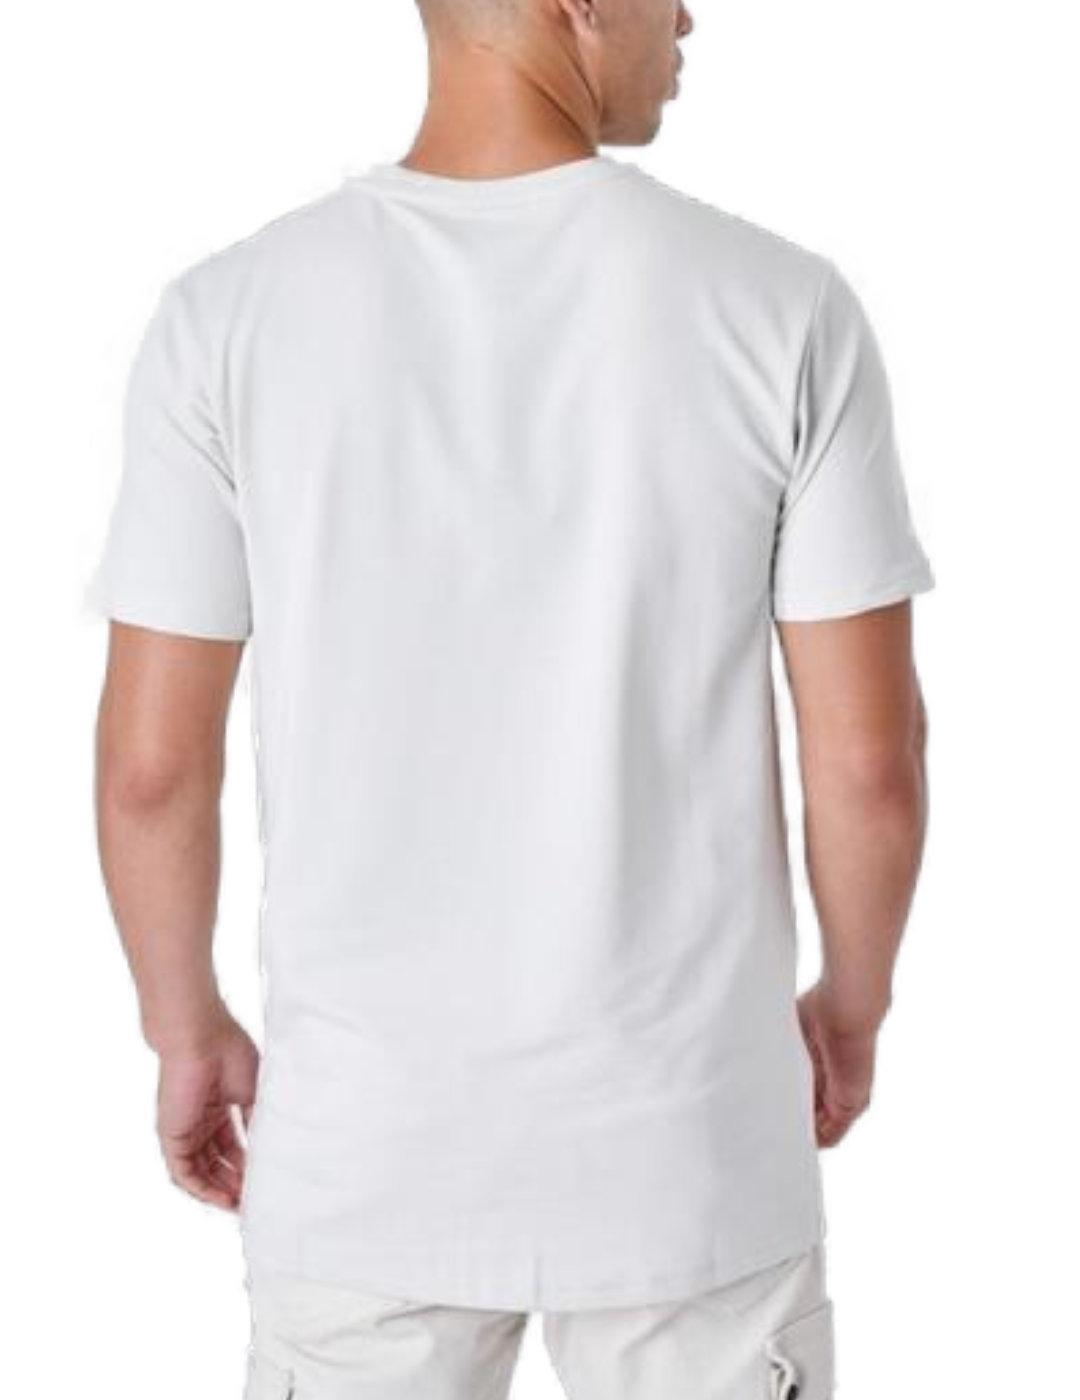 Camiseta ProjectxParis gris logo blanco manga corta unisex